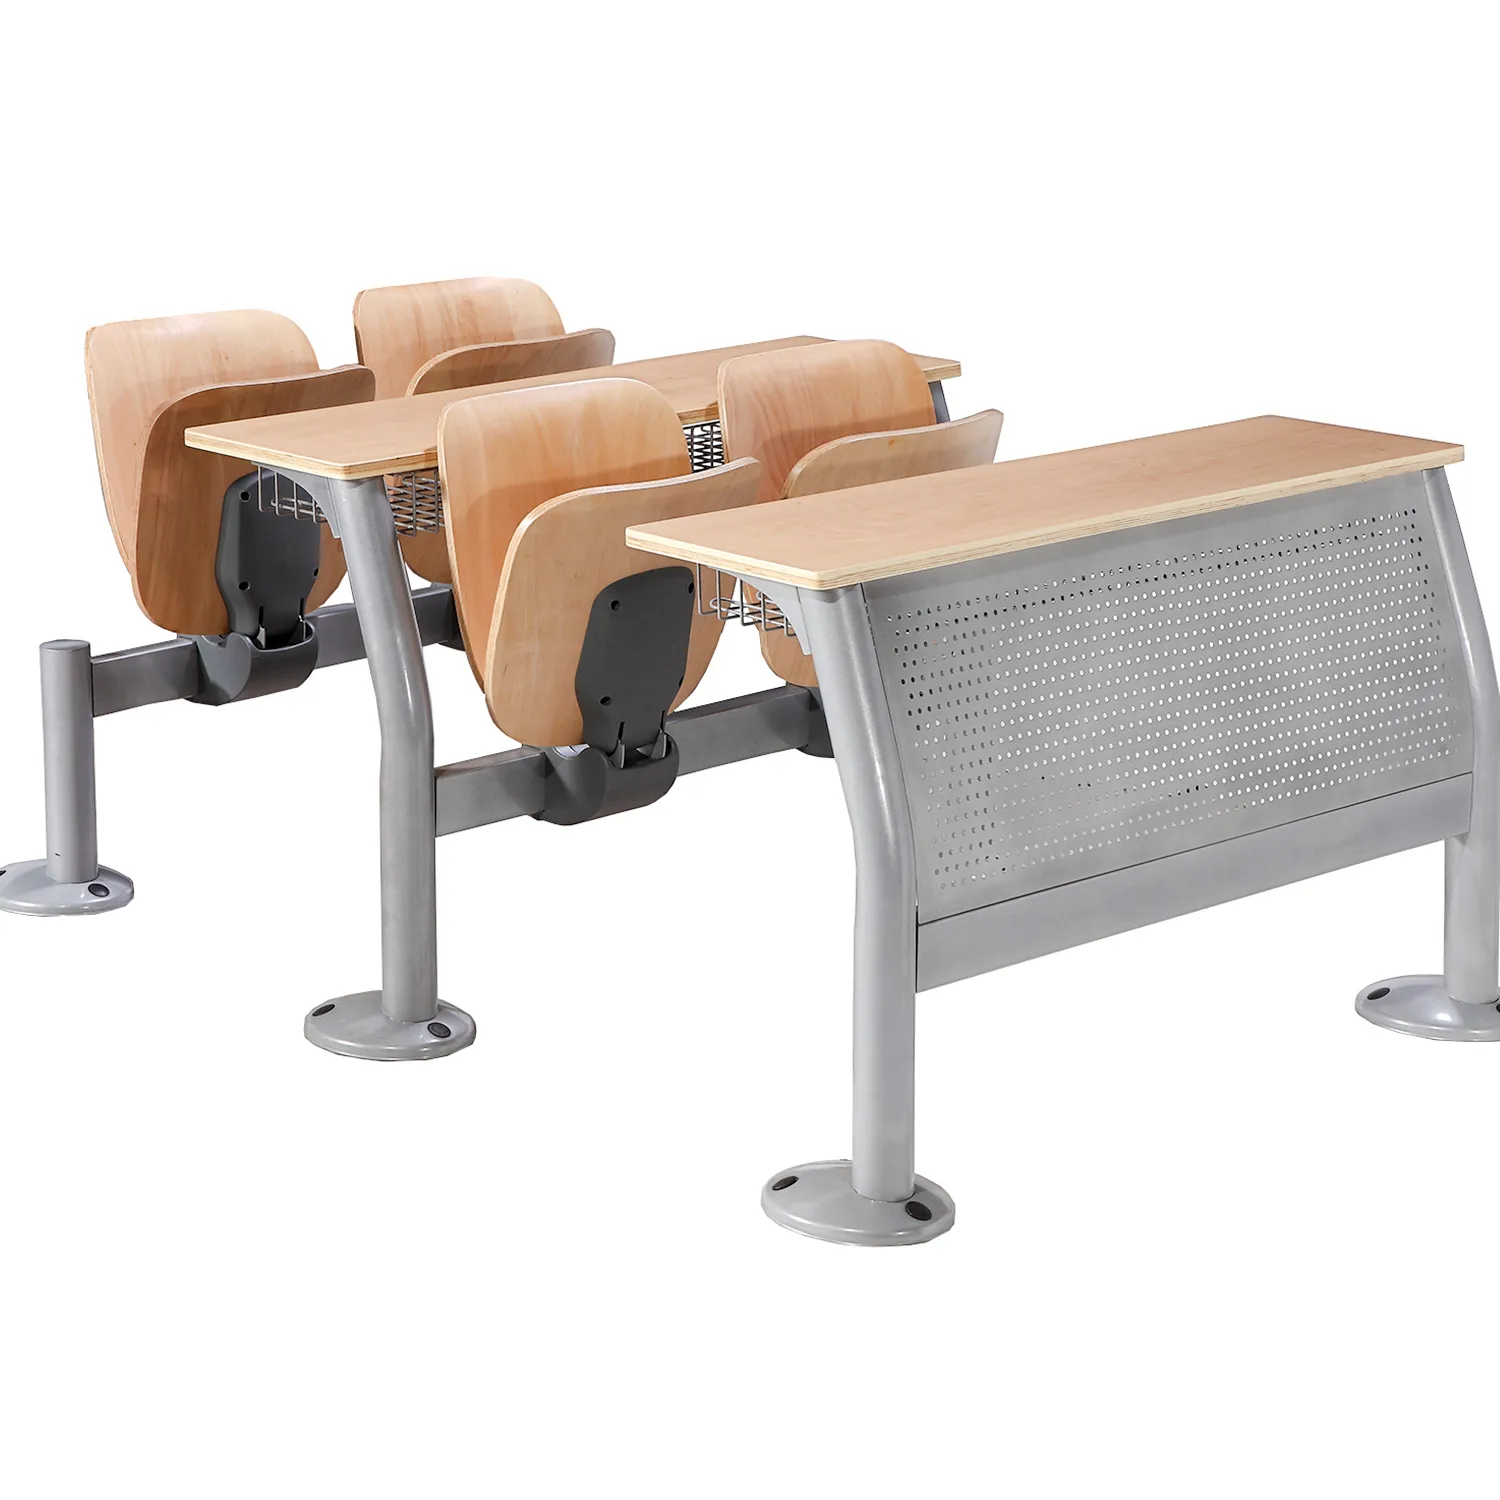 Дешевая мебель со стальными металлическими ножками, классный школьный стол со складным стулом для школы и университета, студенческий стул для колледжа